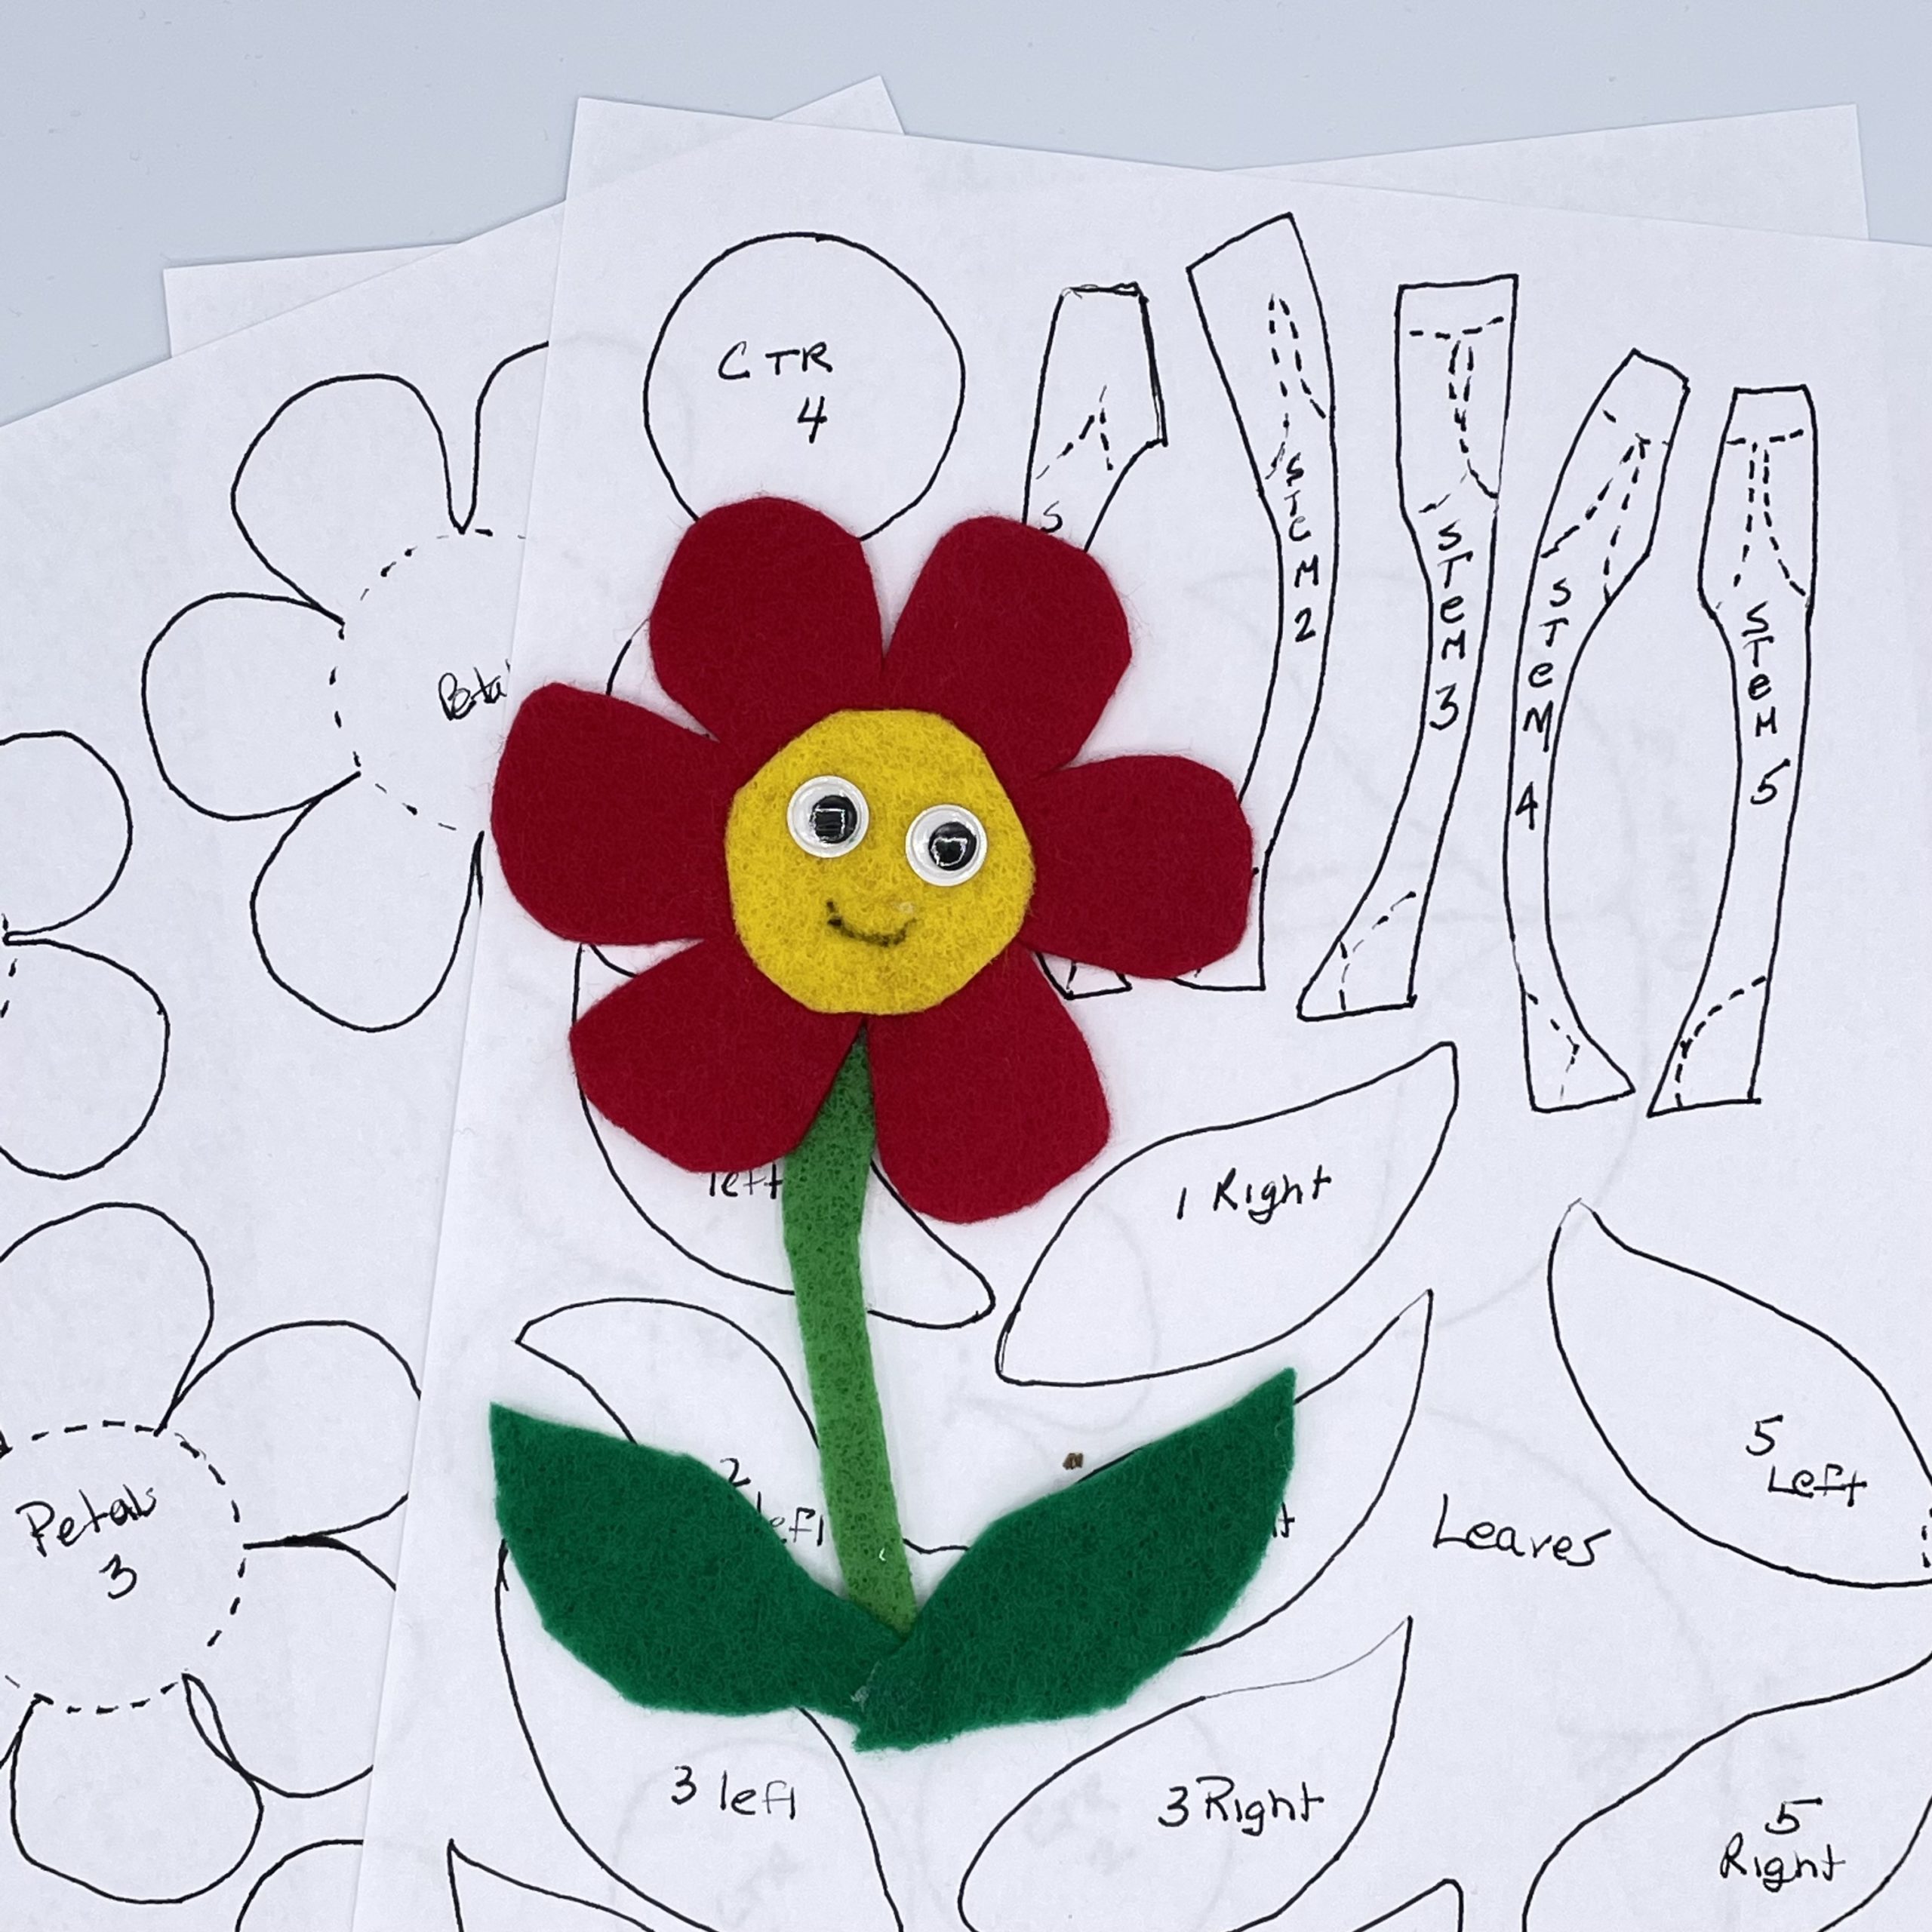 5 Little Flowers //felt Board Stories//flannel Board Stories